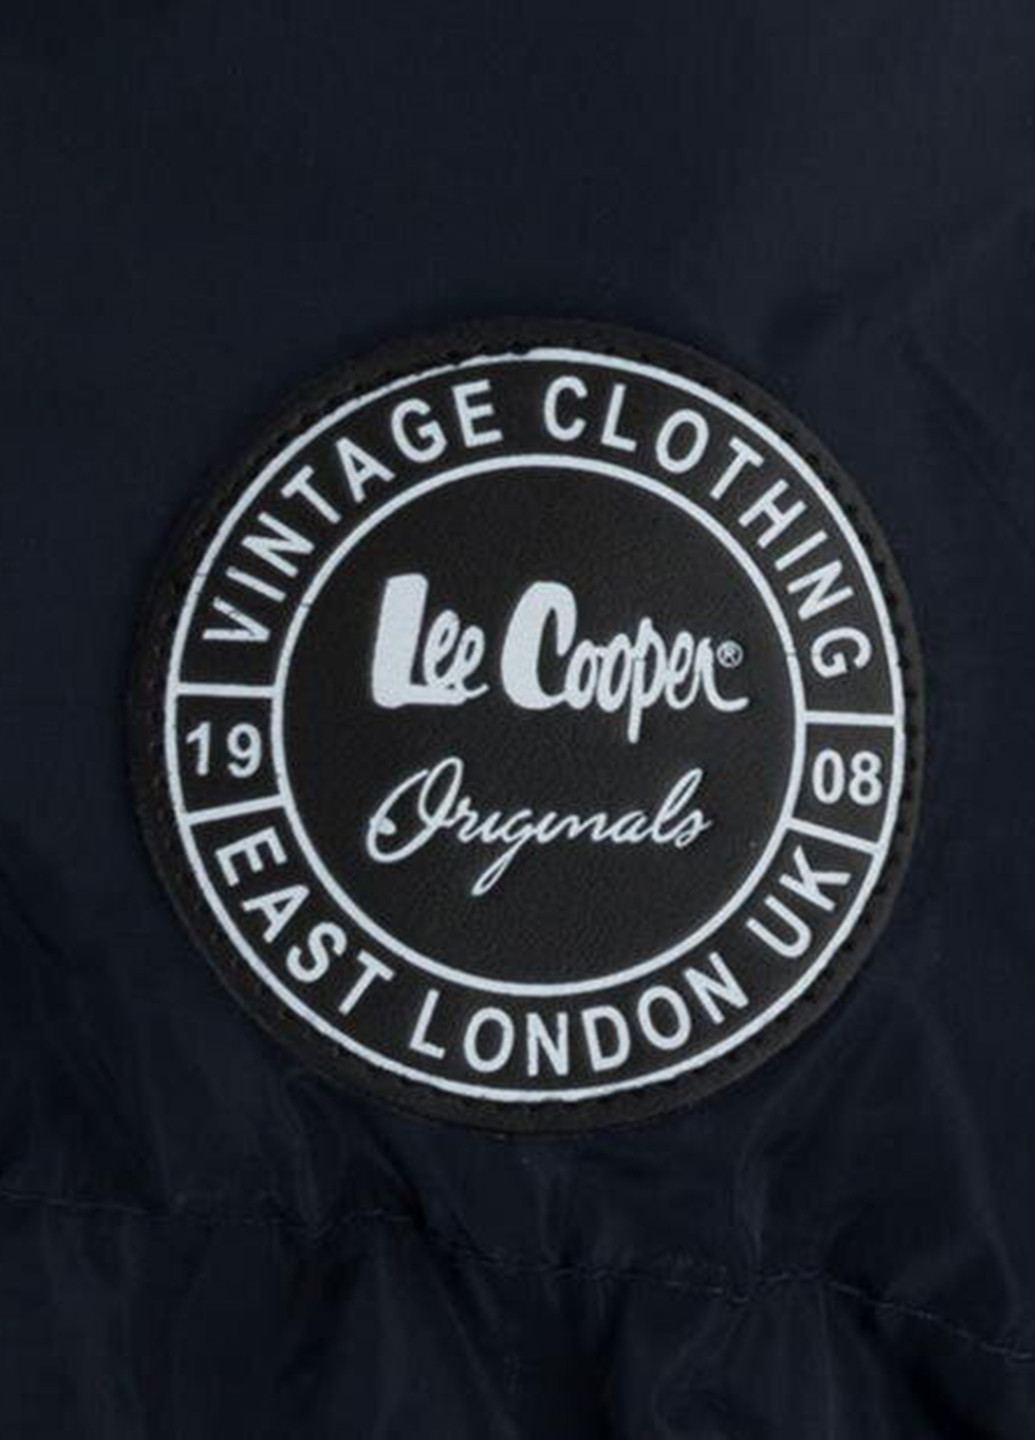 Темно-синяя зимняя куртка Lee Cooper